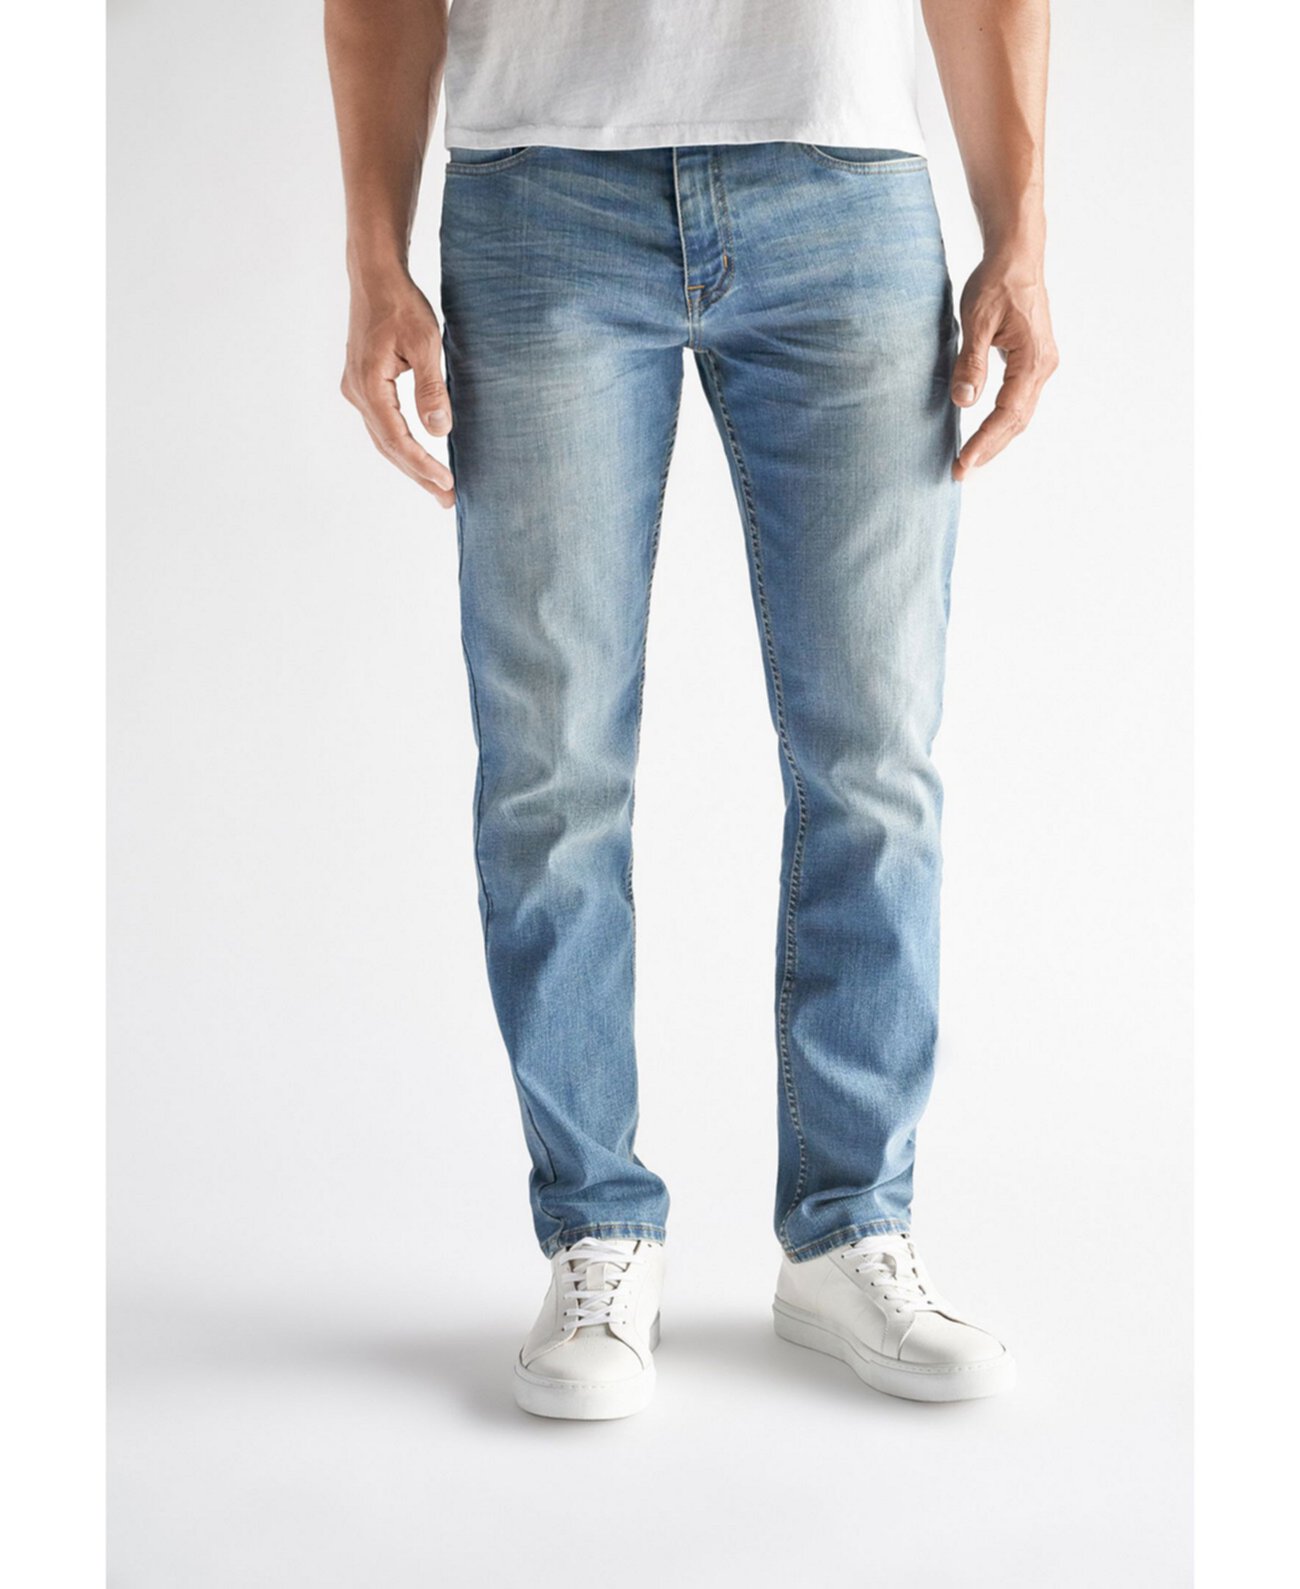 Мужские спортивные эластичные джинсы в спортивном стиле Fit, Gates Wash Devil-Dog Dungarees